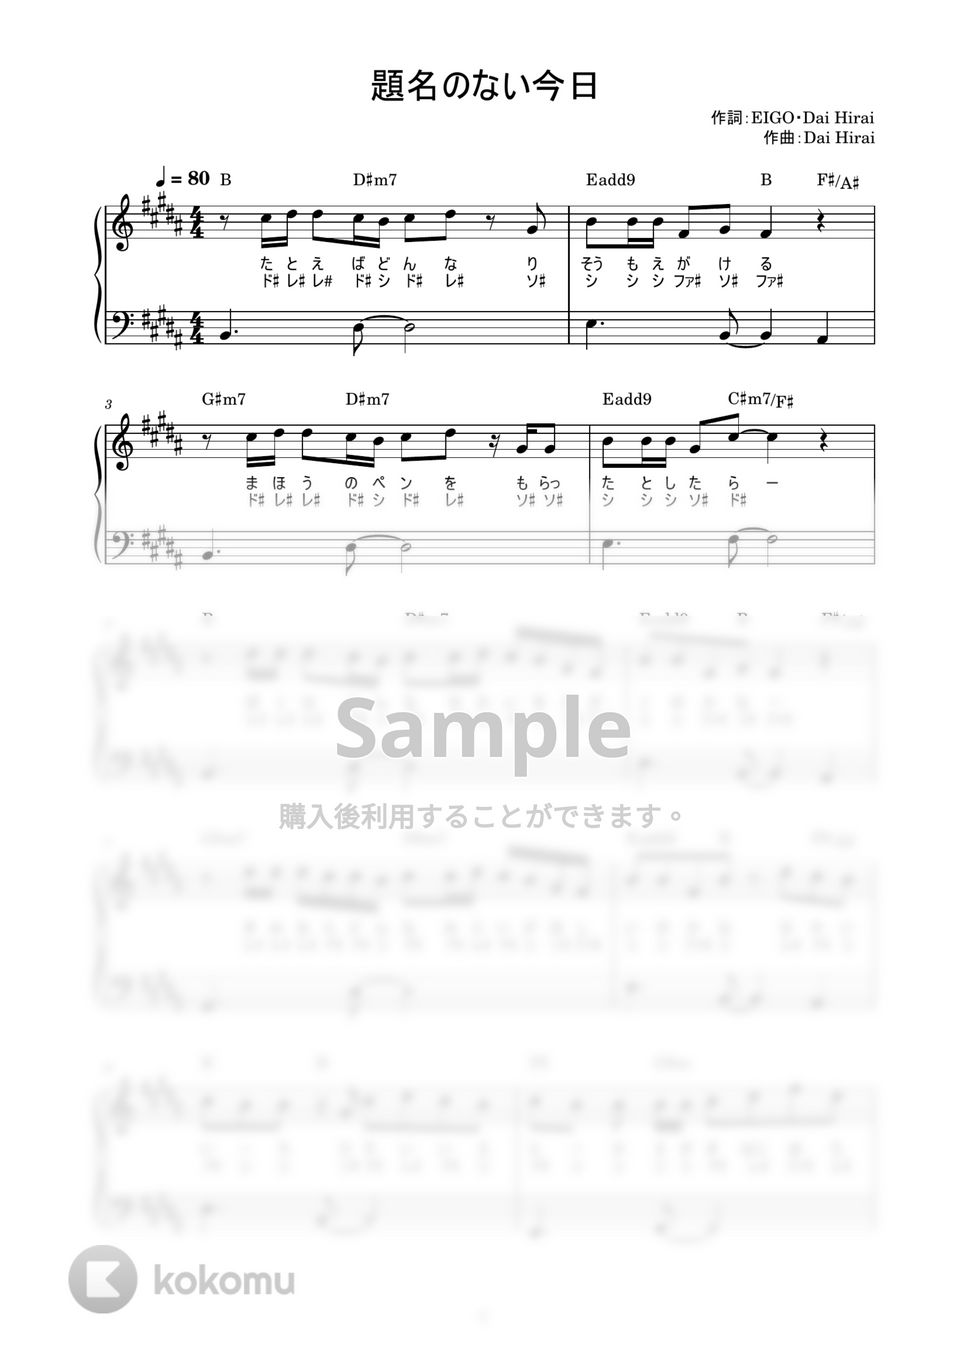 平井大 - 題名のない今日 (かんたん / 歌詞付き / ドレミ付き / 初心者) by piano.tokyo